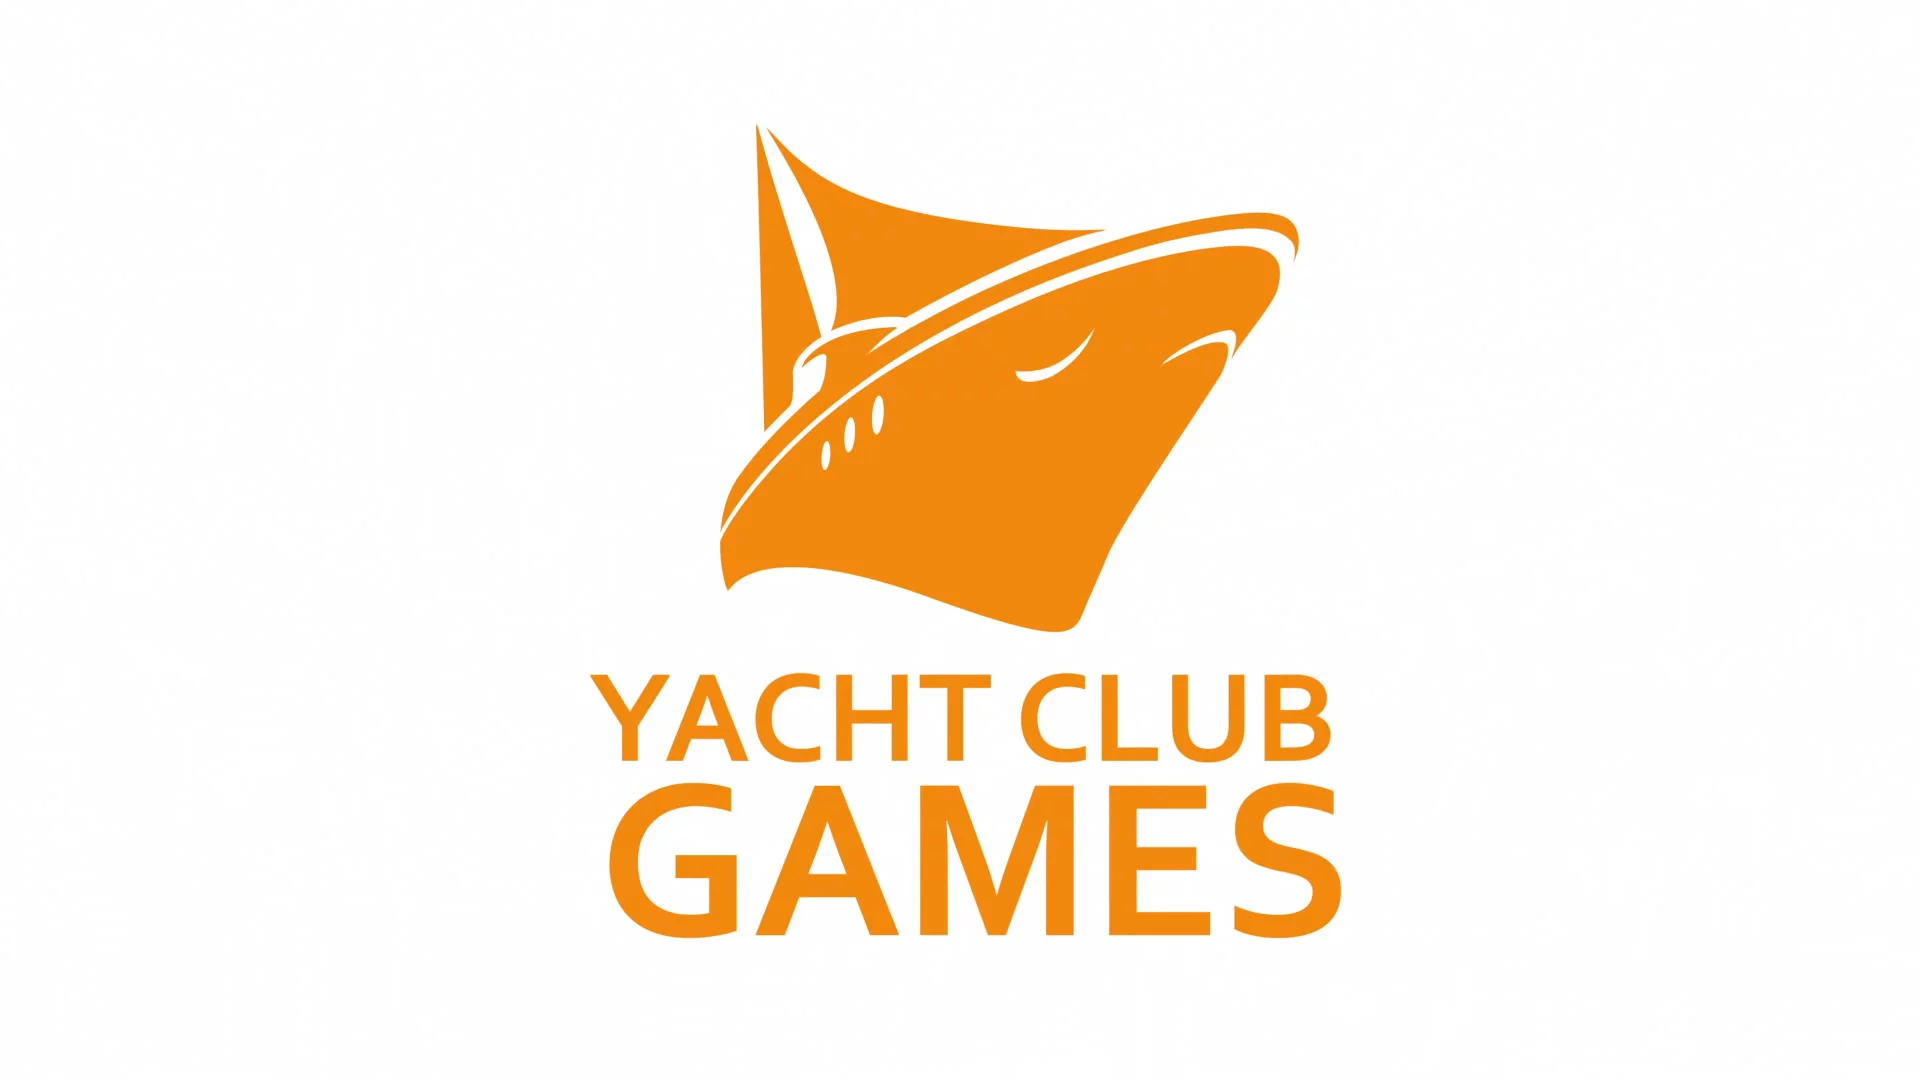 Yacht Club has 